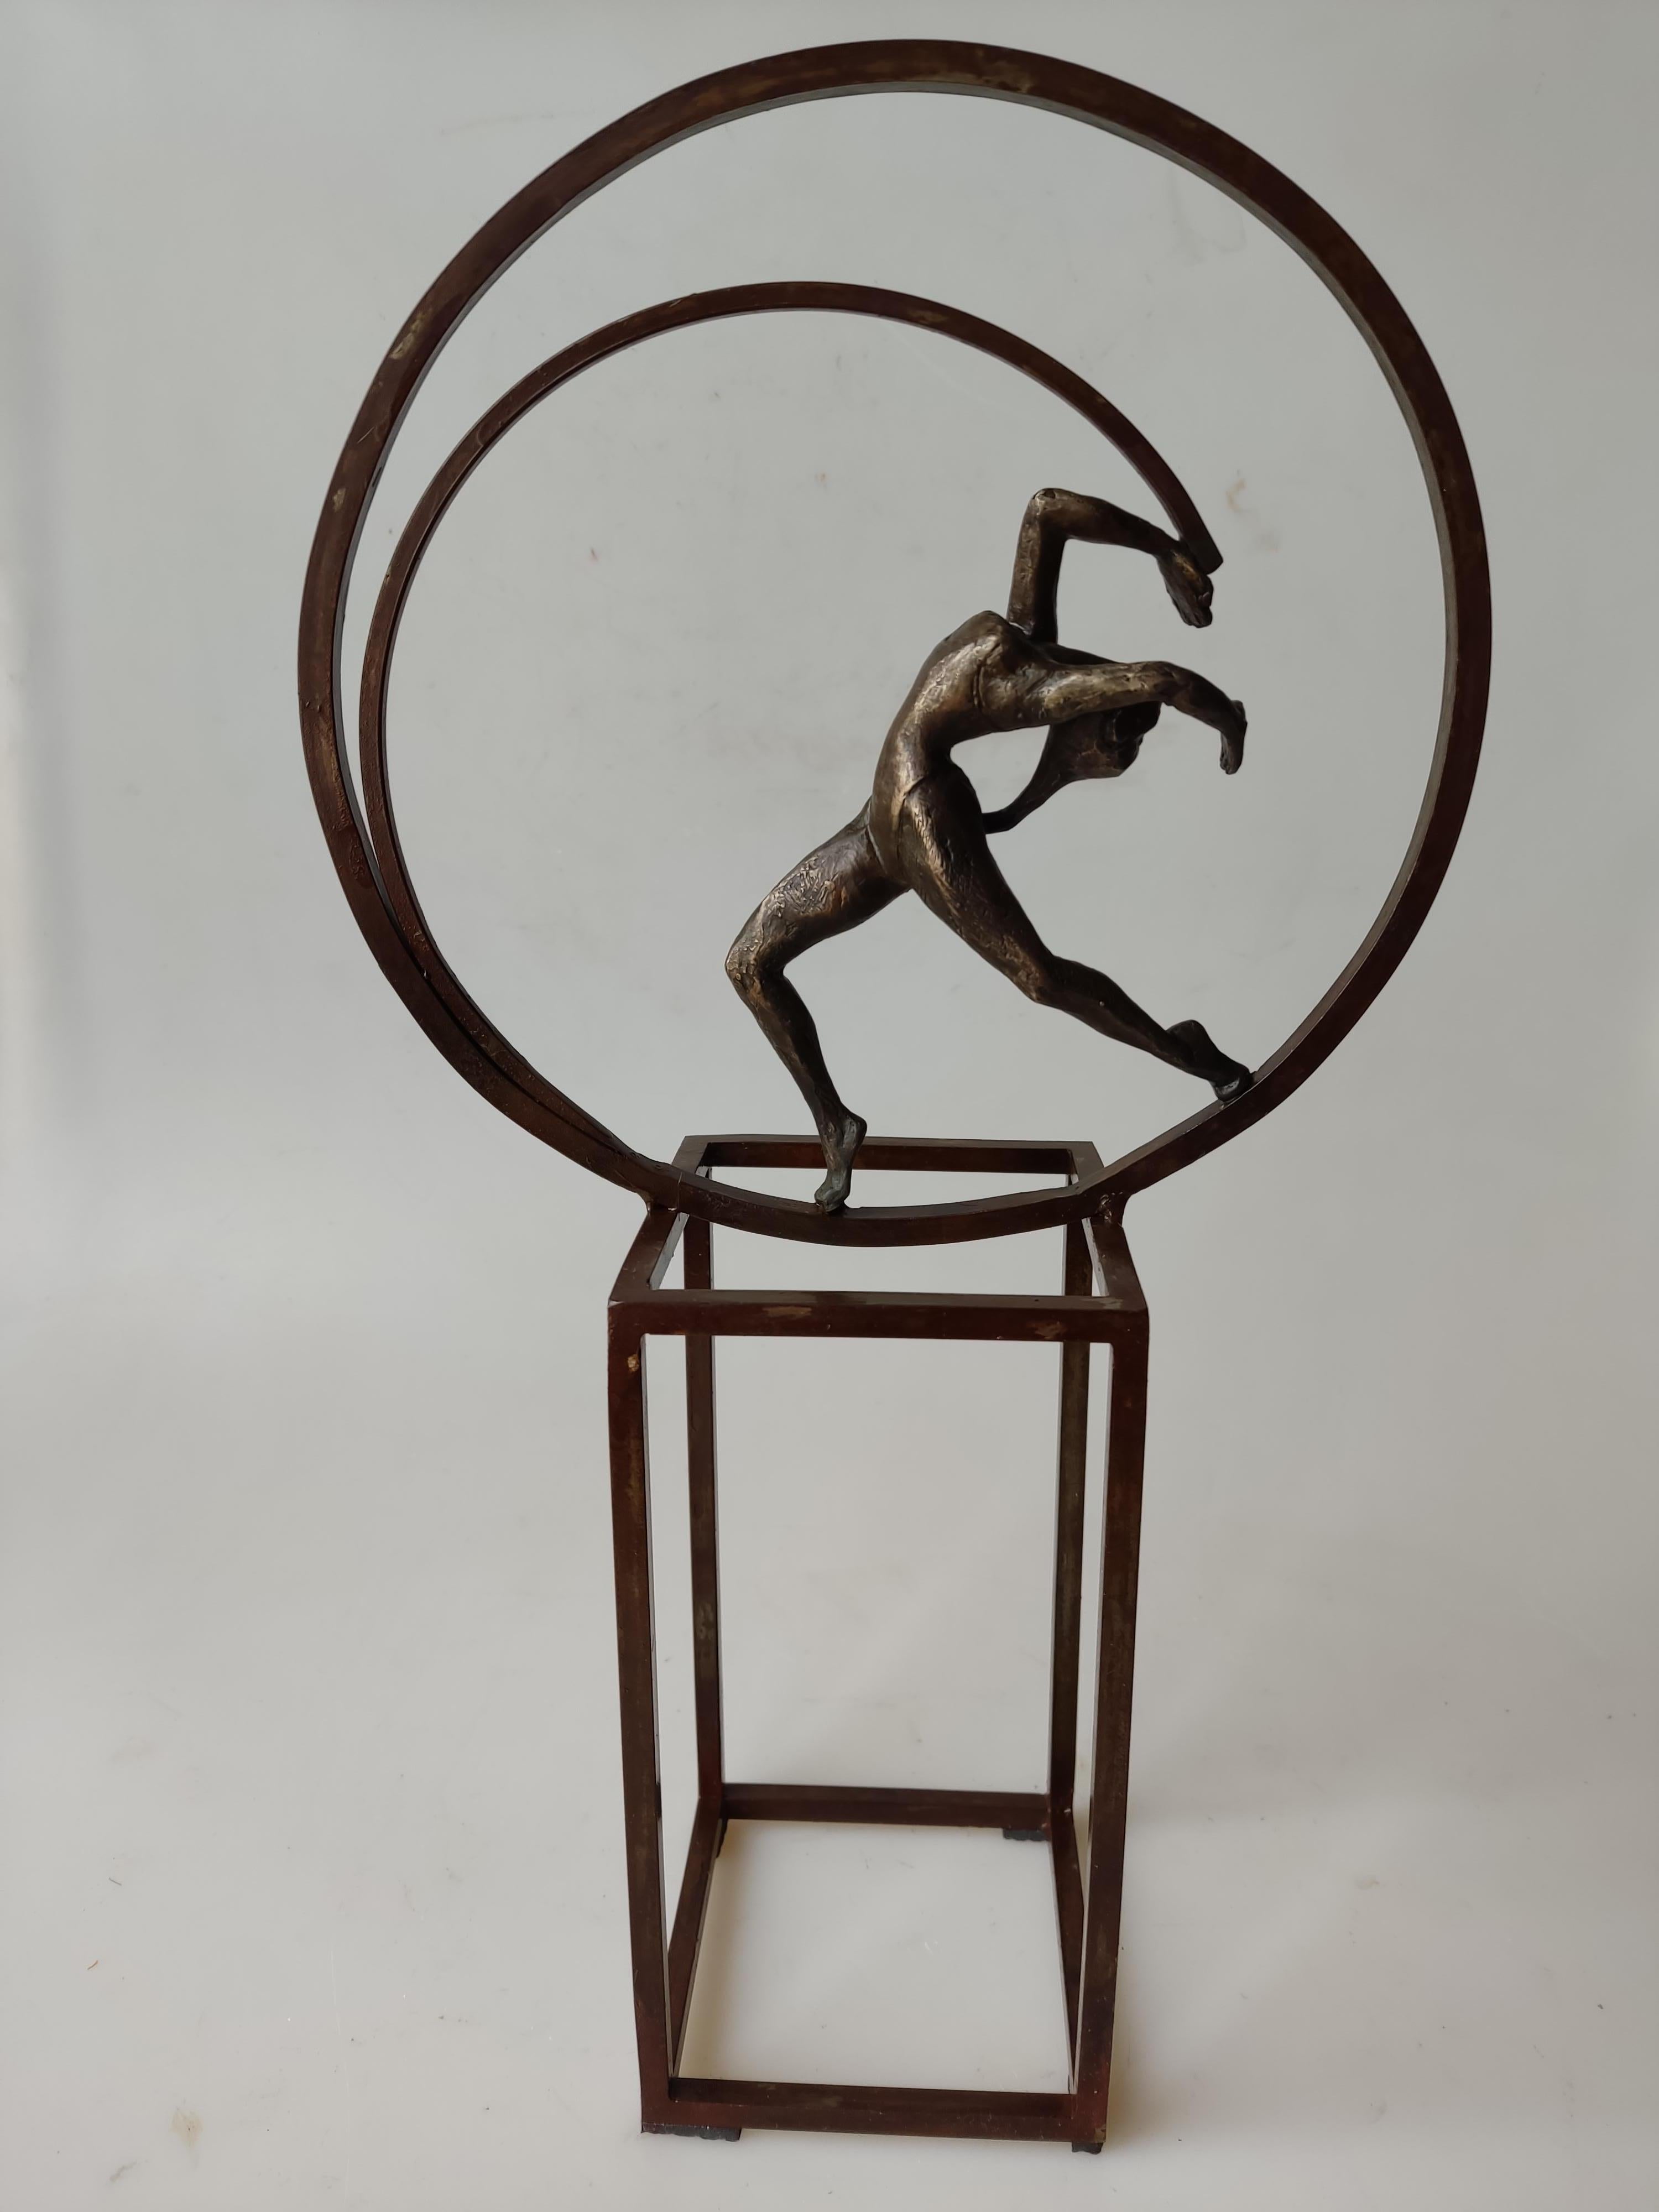 Joan Artigas Planas Figurative Sculpture – "Leben" zeitgenössische Bronze Tisch, Wandmalerei Skulptur figurative Mädchen entspannen Tanz